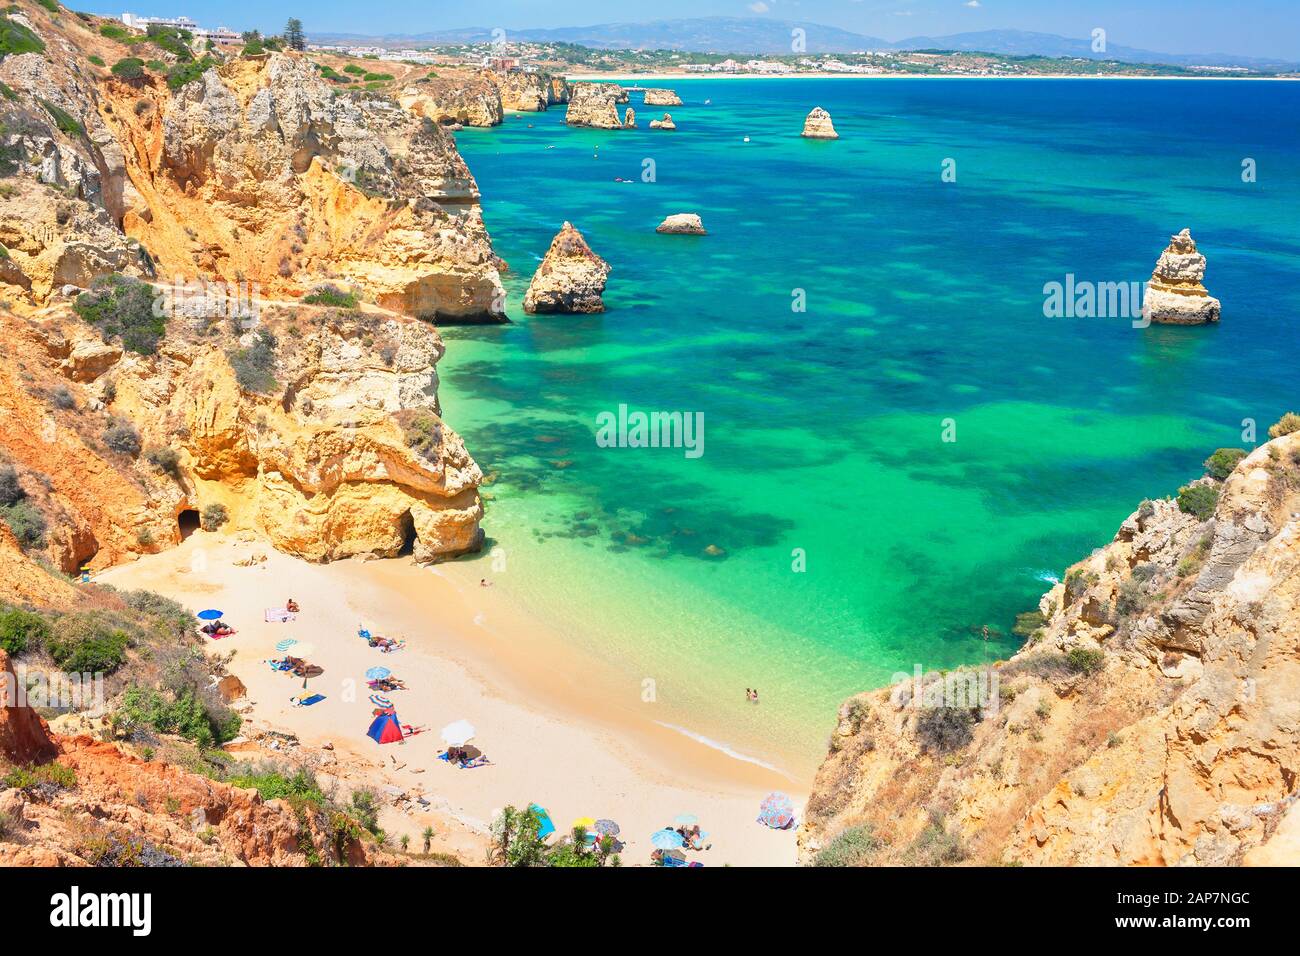 Praia Camilo, Lagos, Algarve, Portugal Stockfoto